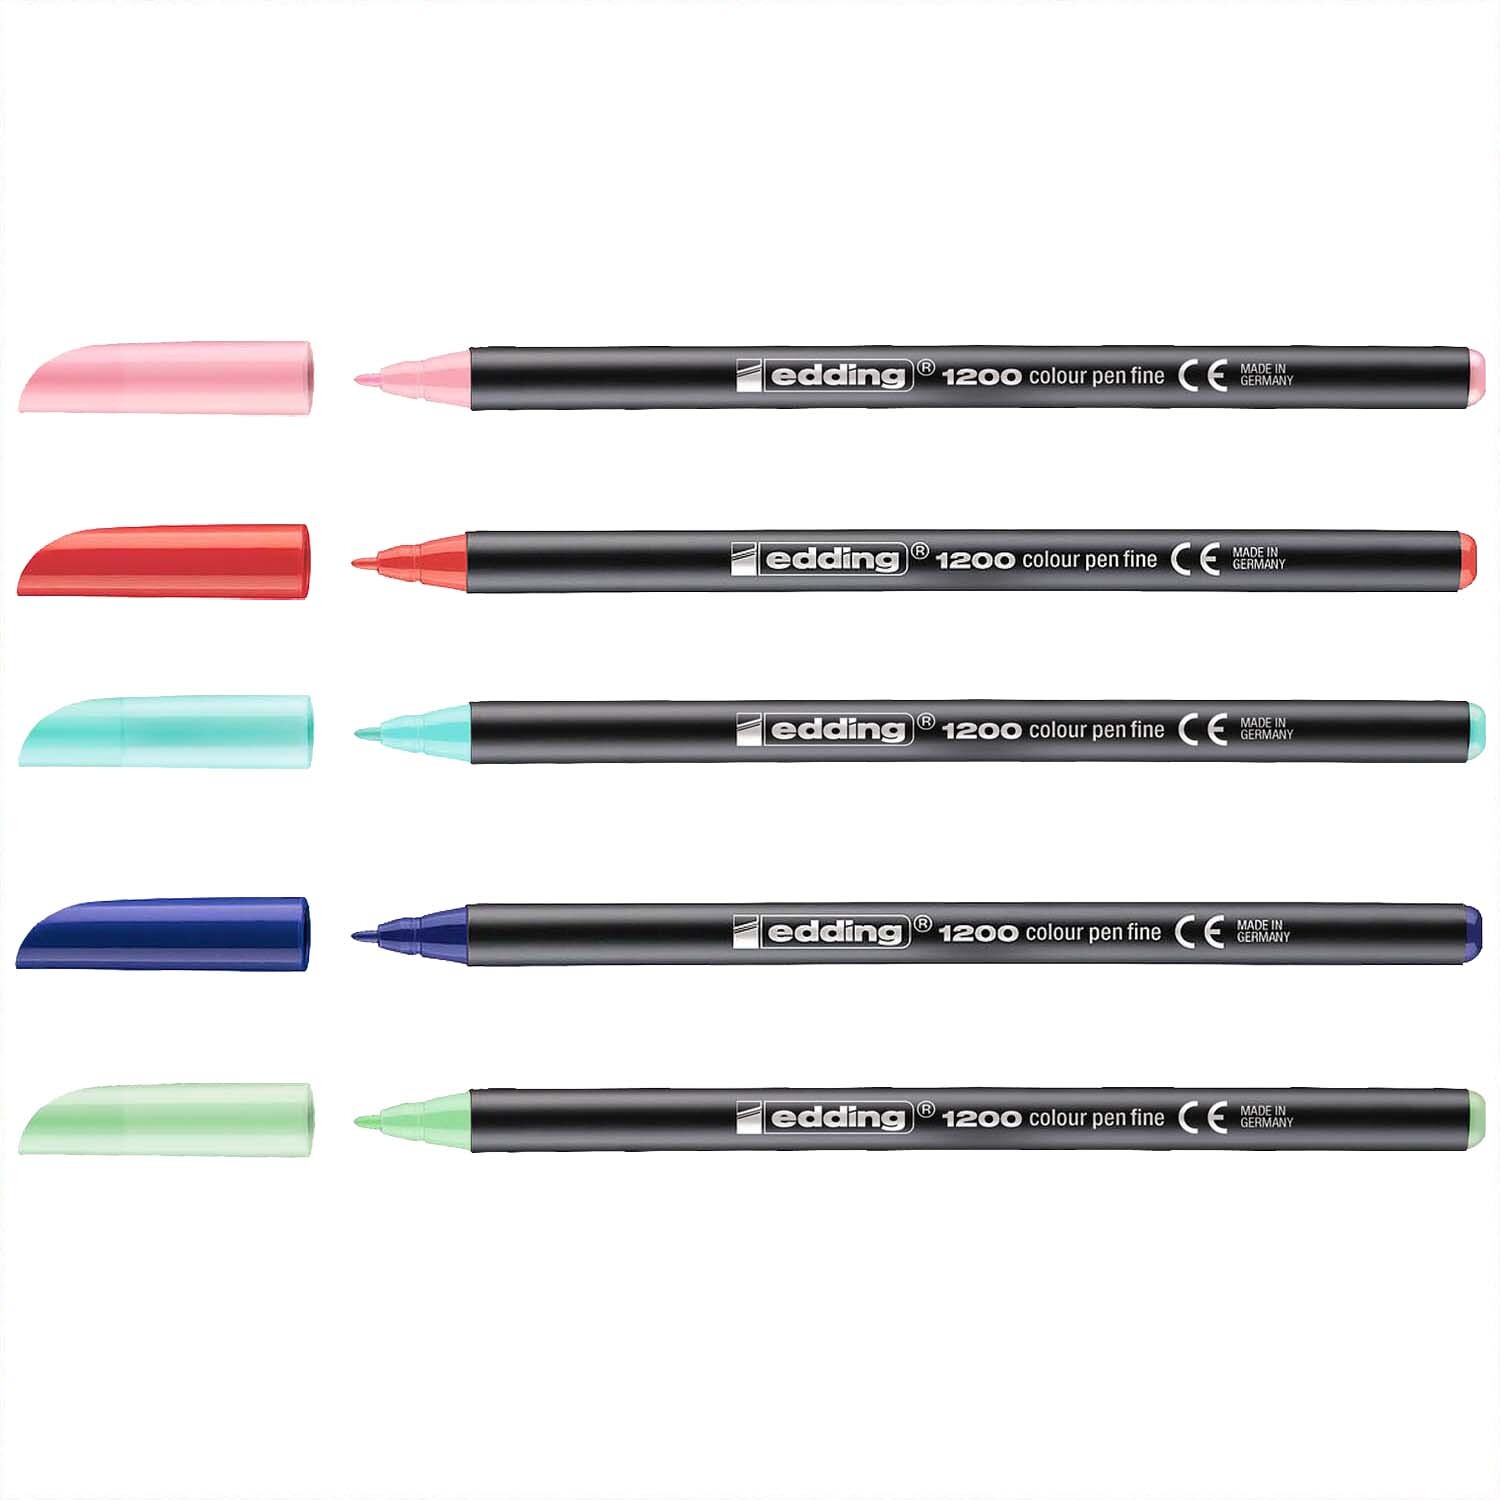 1200 colour pen 0,5-1mm